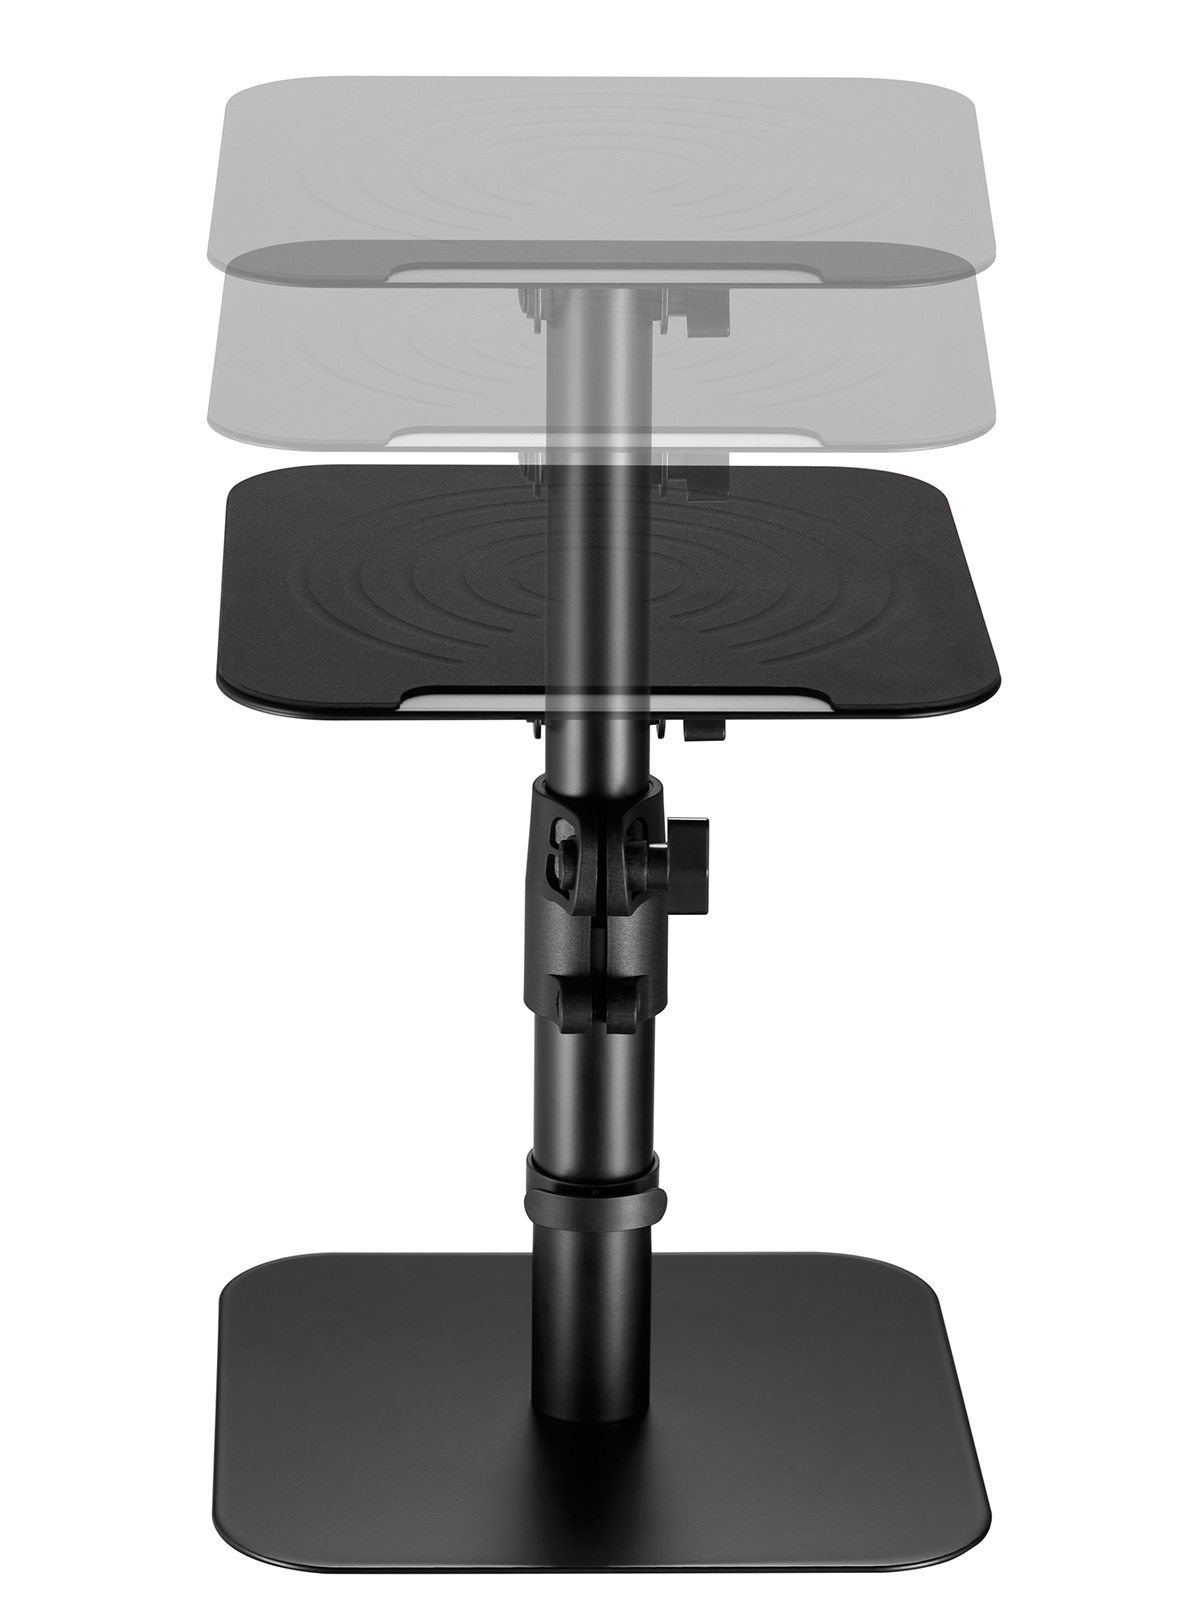 HS31L WALL MY 2er-Set & Lautsprecher Ständer vibrationsreduzierende höhenverstellbare